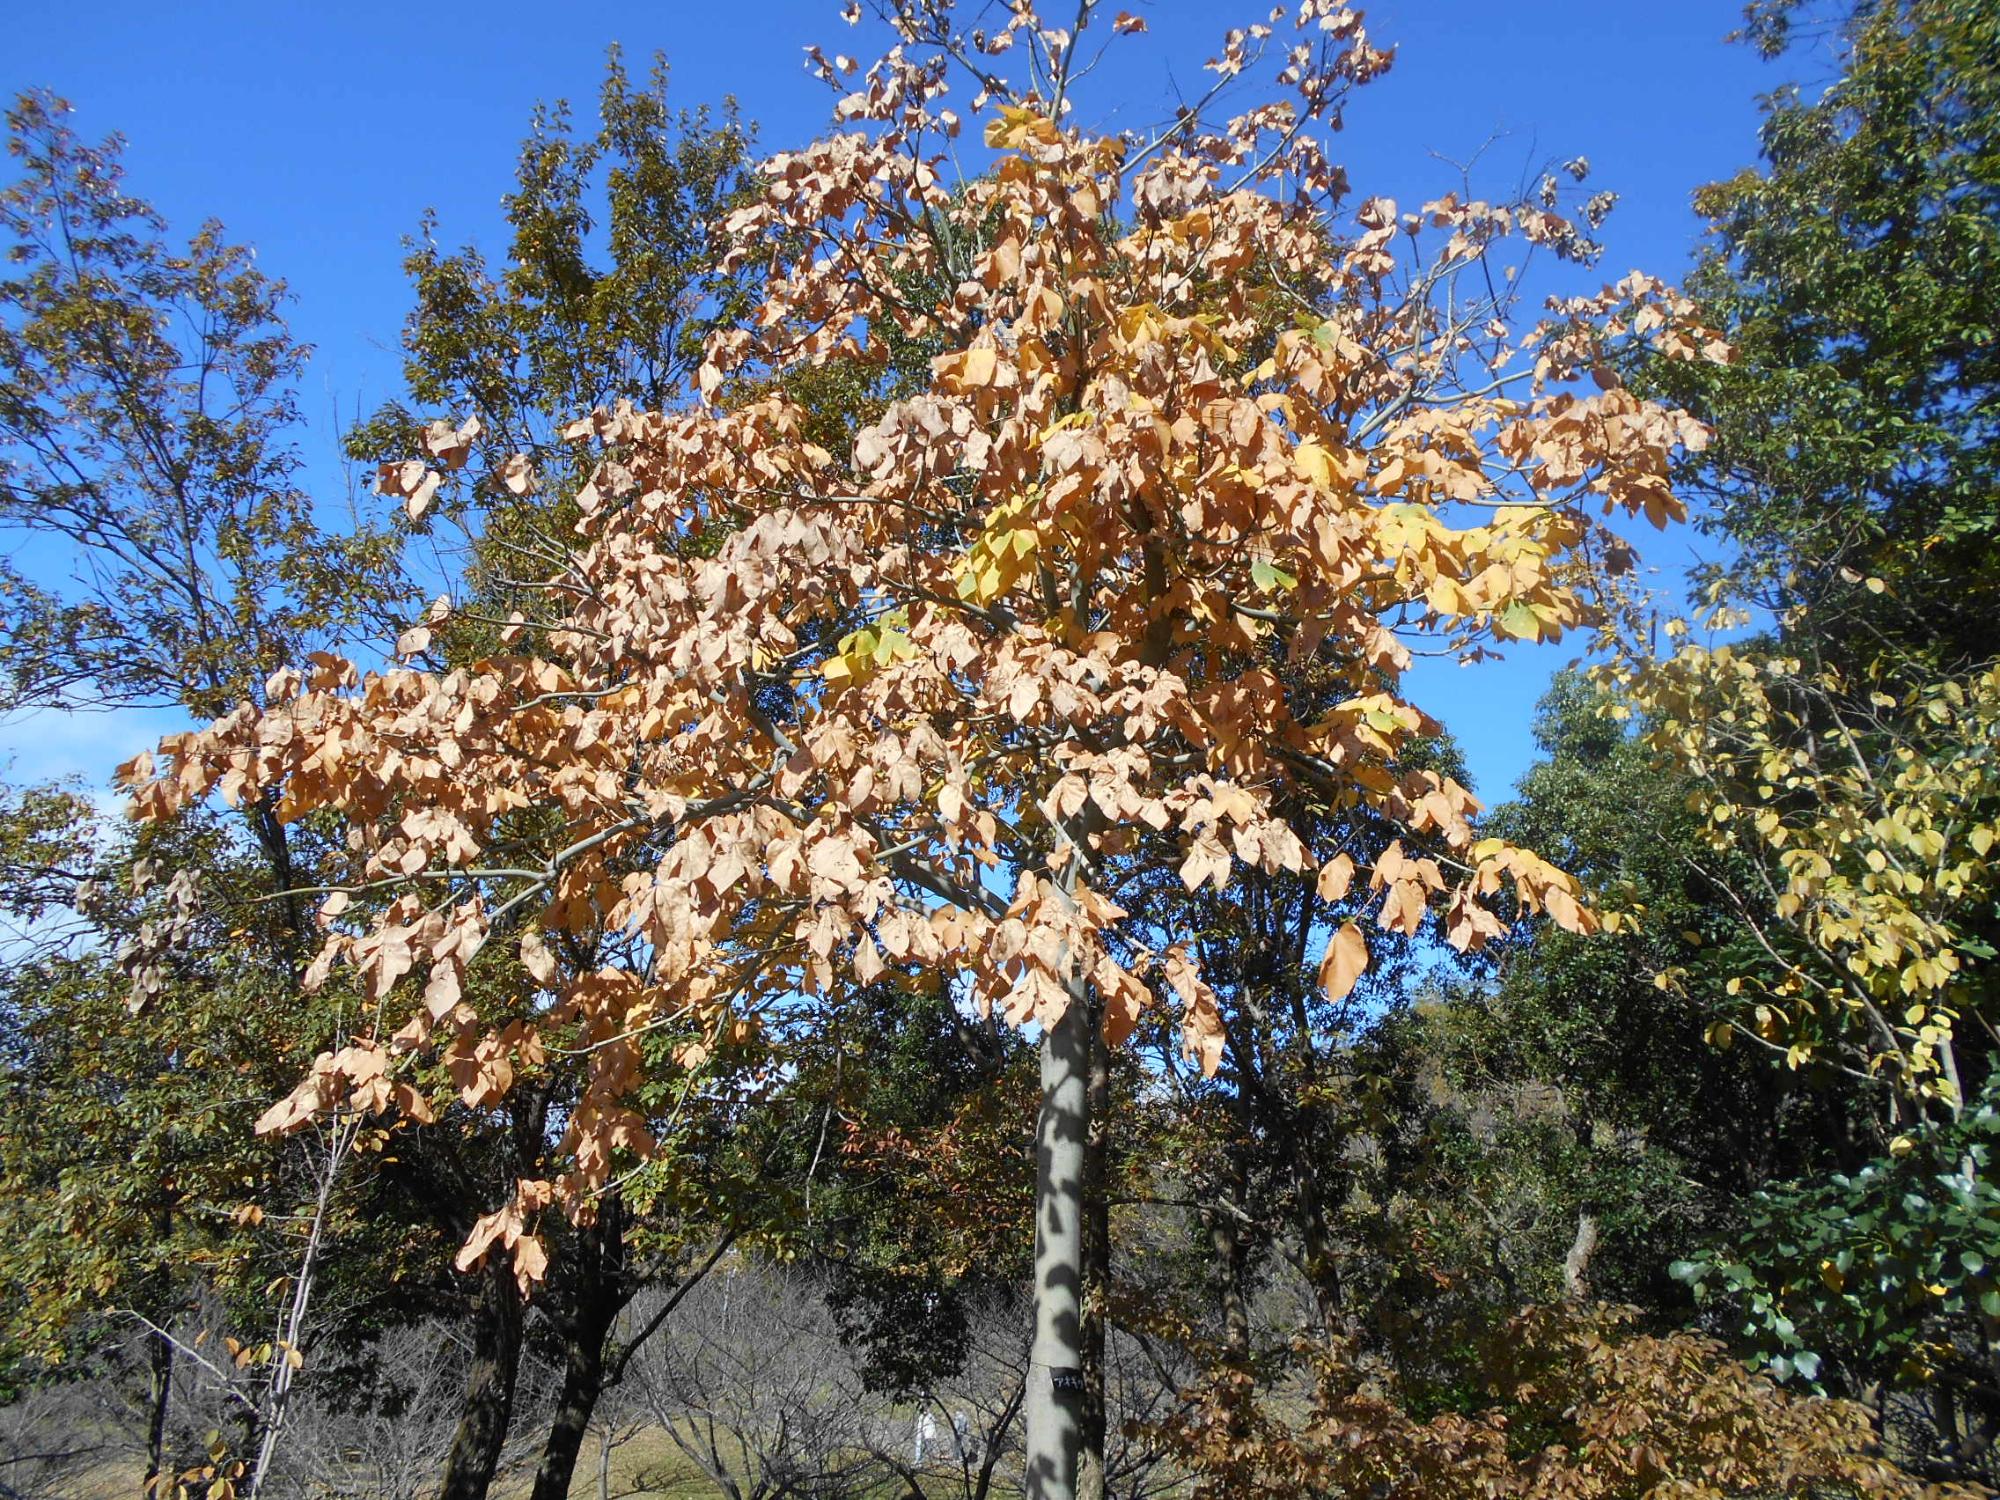 薬草園の東屋付近のアオギリの木です。大人の手のひらより大きな葉が落葉します。